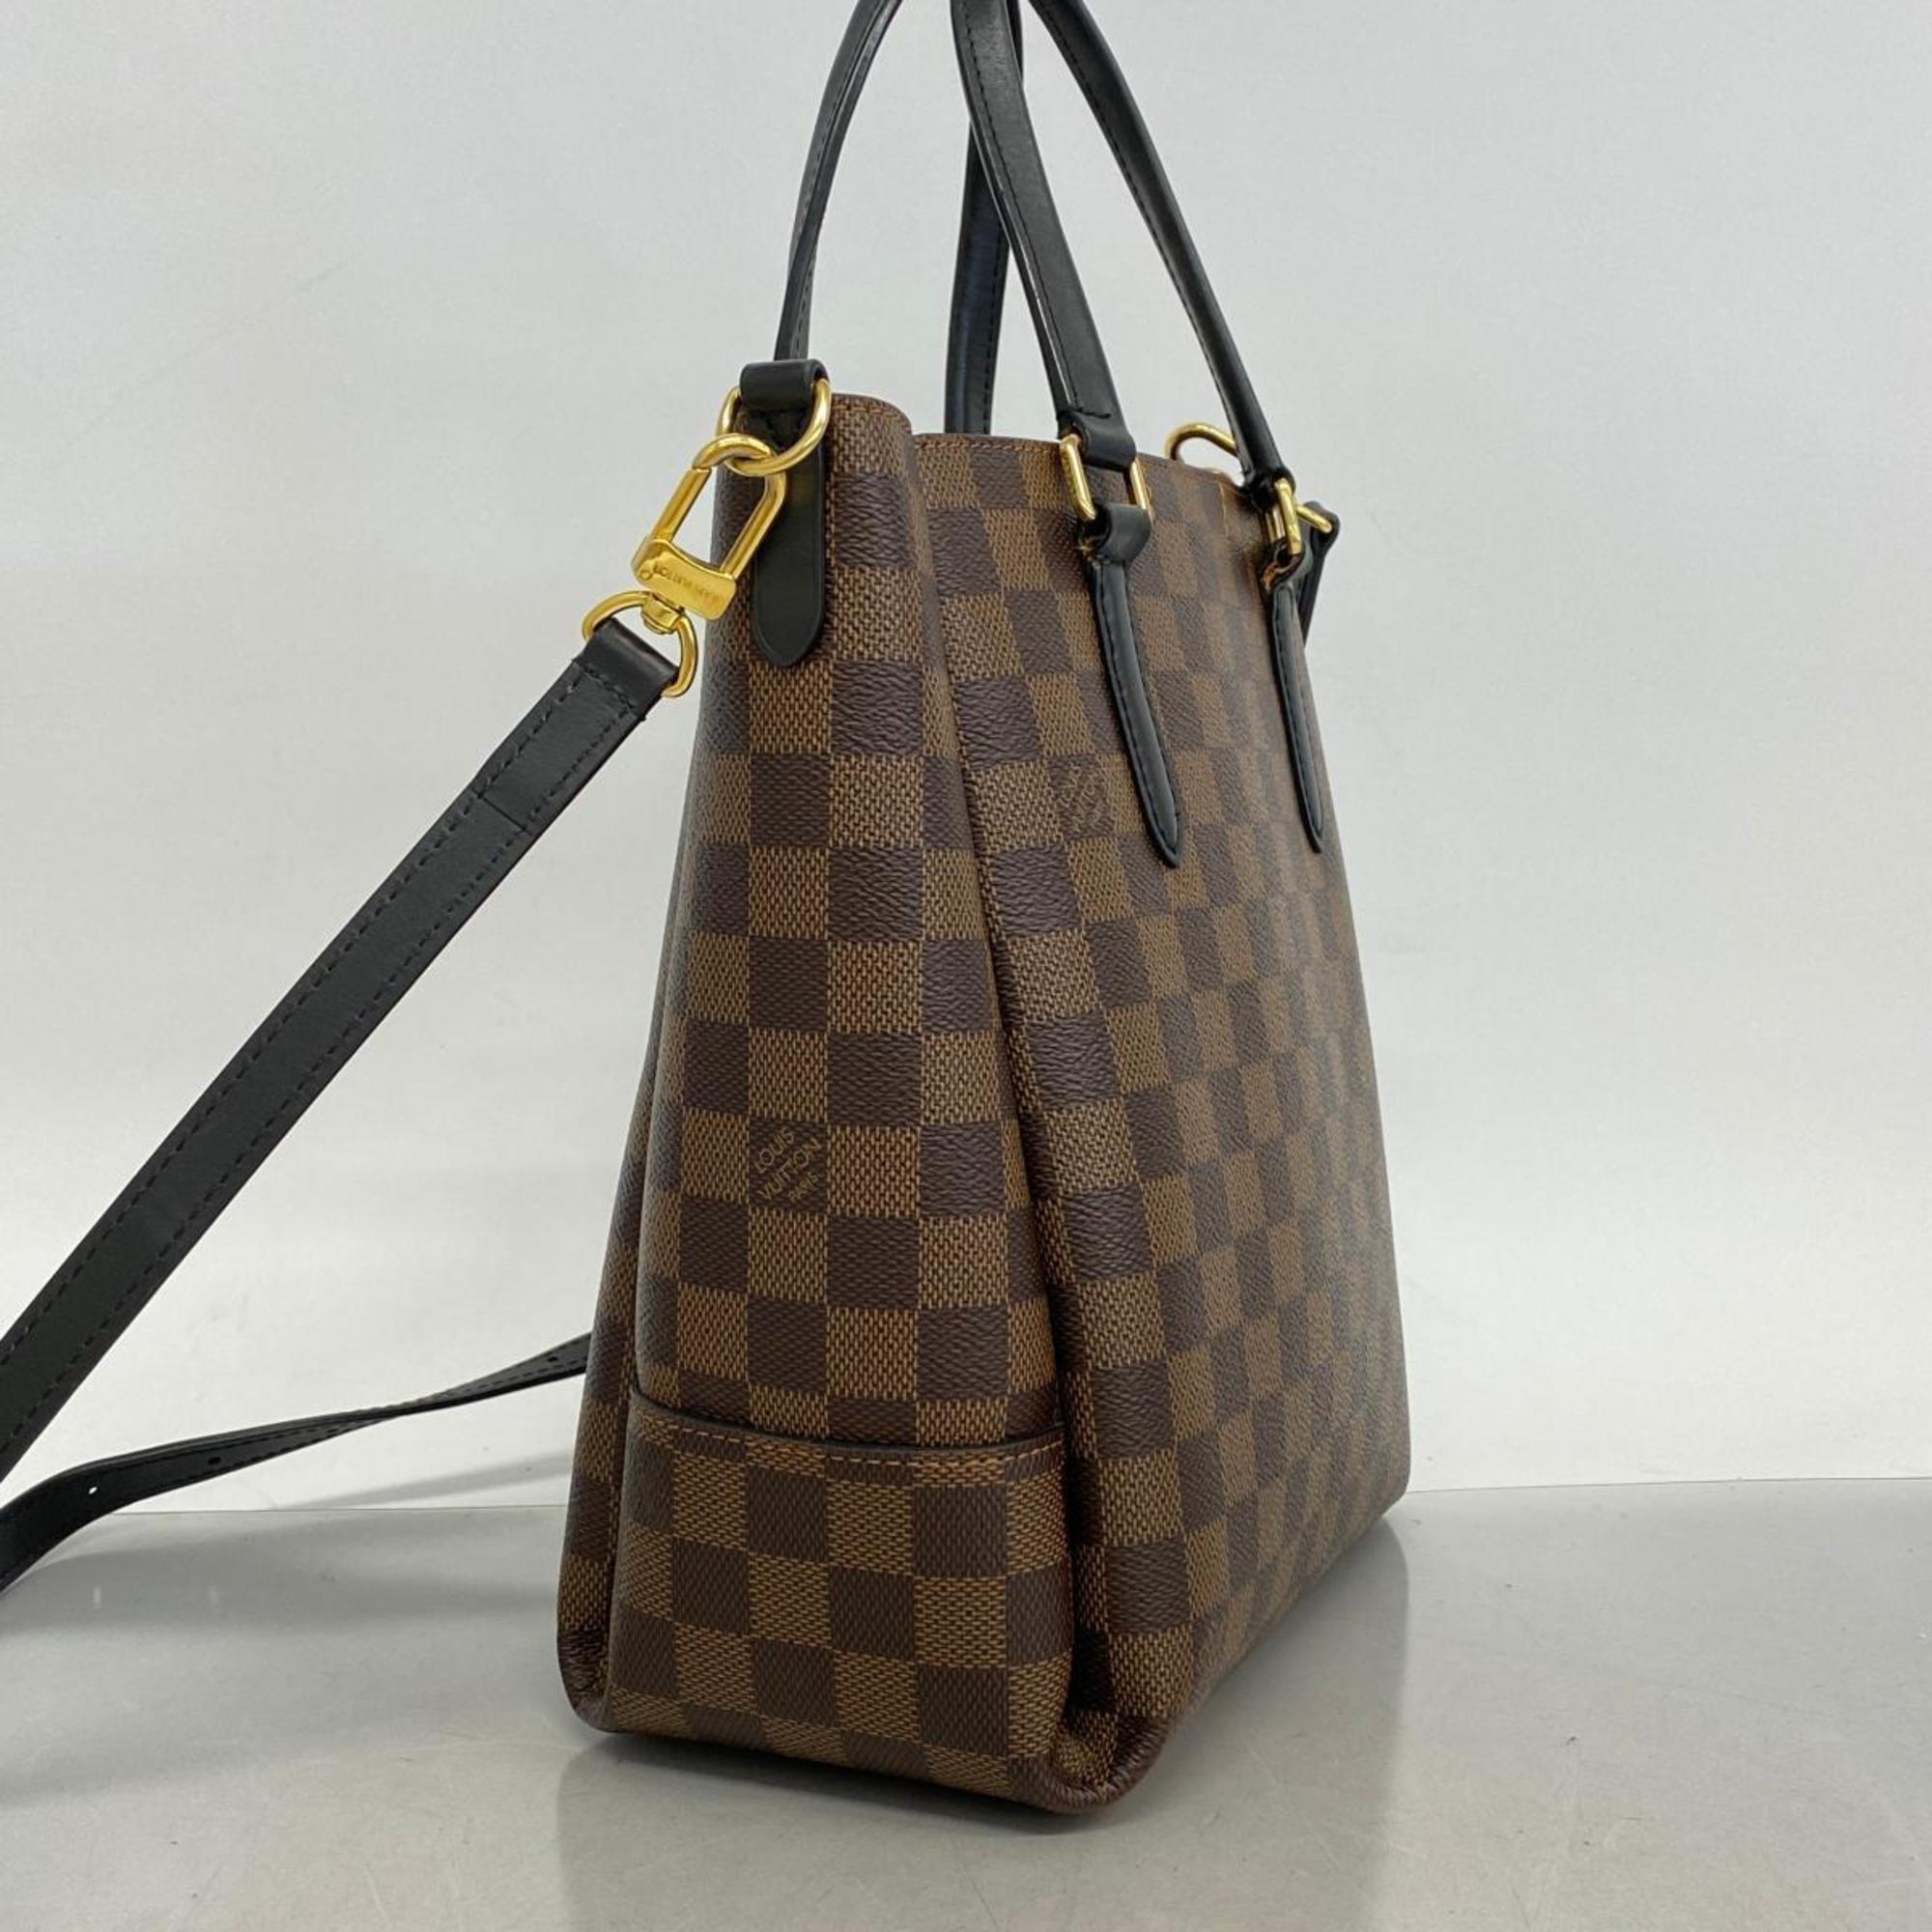 Louis Vuitton Handbag Damier Belmont NV BB N60348 Ebene Black Ladies